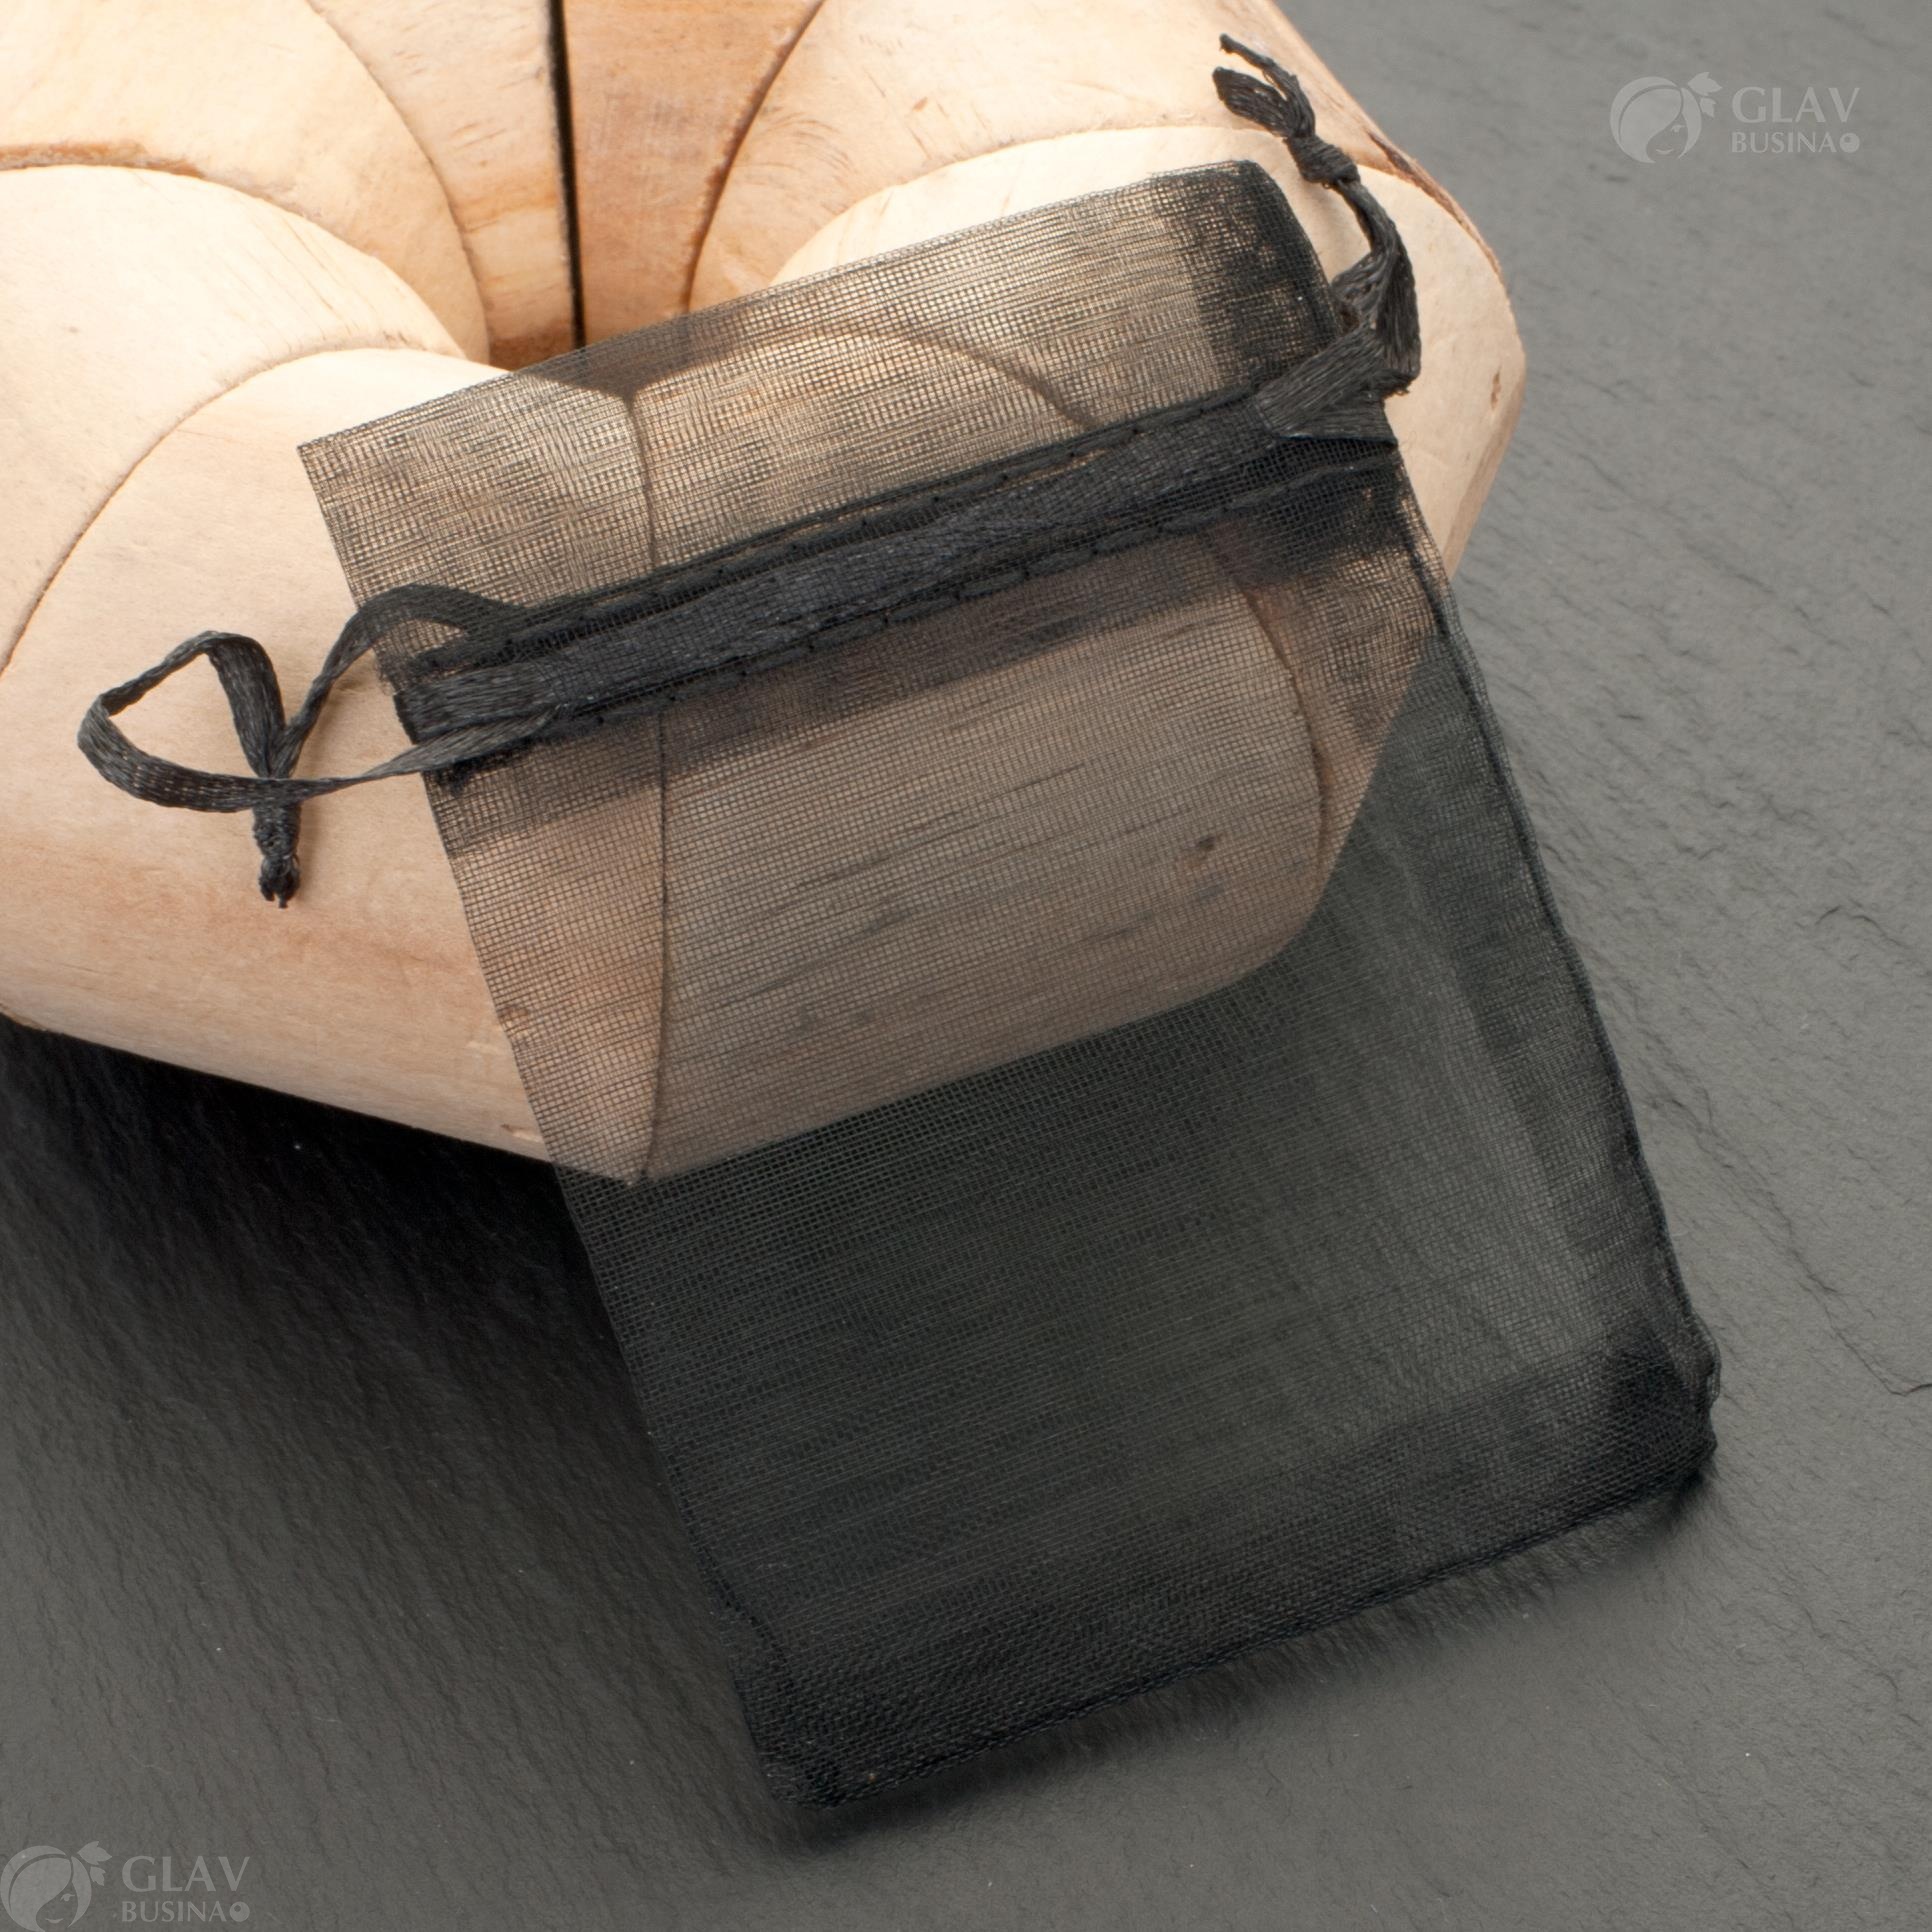 Черные мешочки из органзы с ленточкой, размер 7x9 см, идеальны для упаковки подарков или украшений.